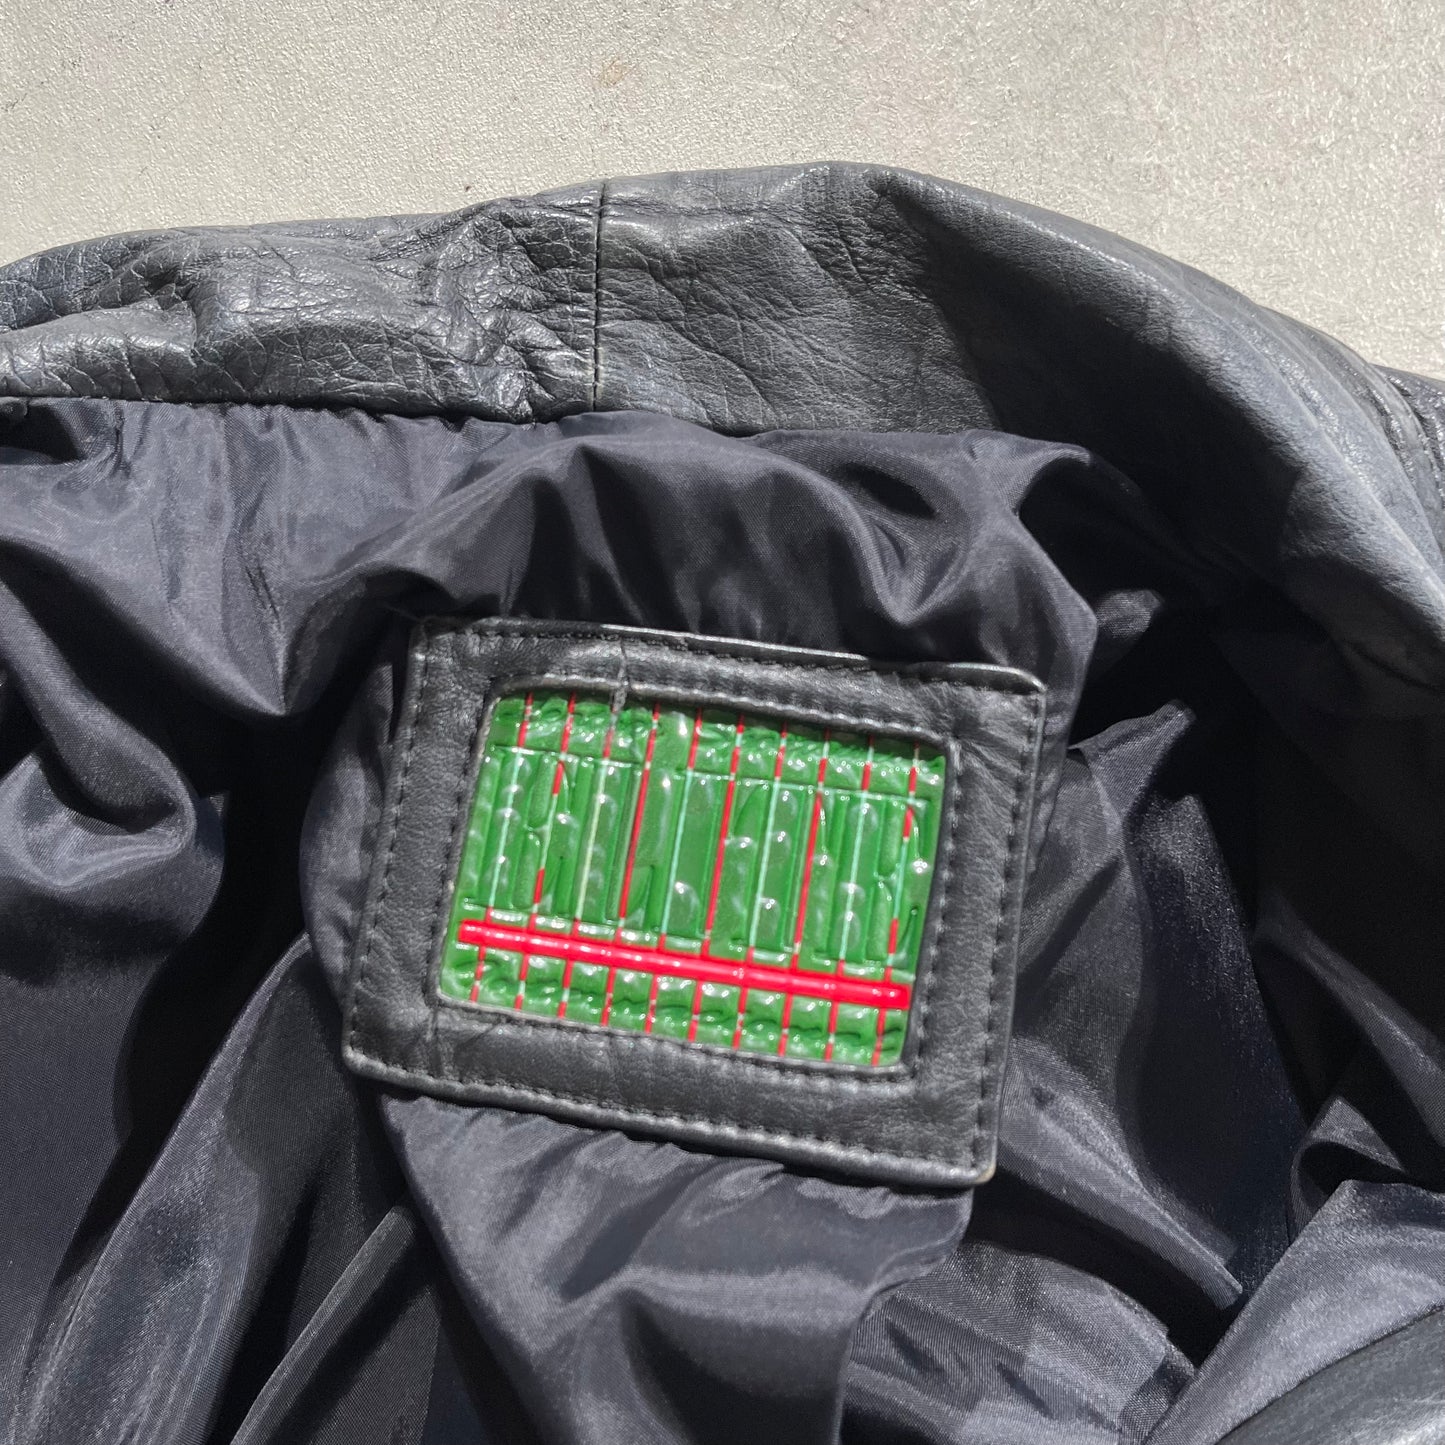 90s Boxy Leather Jacket- XL